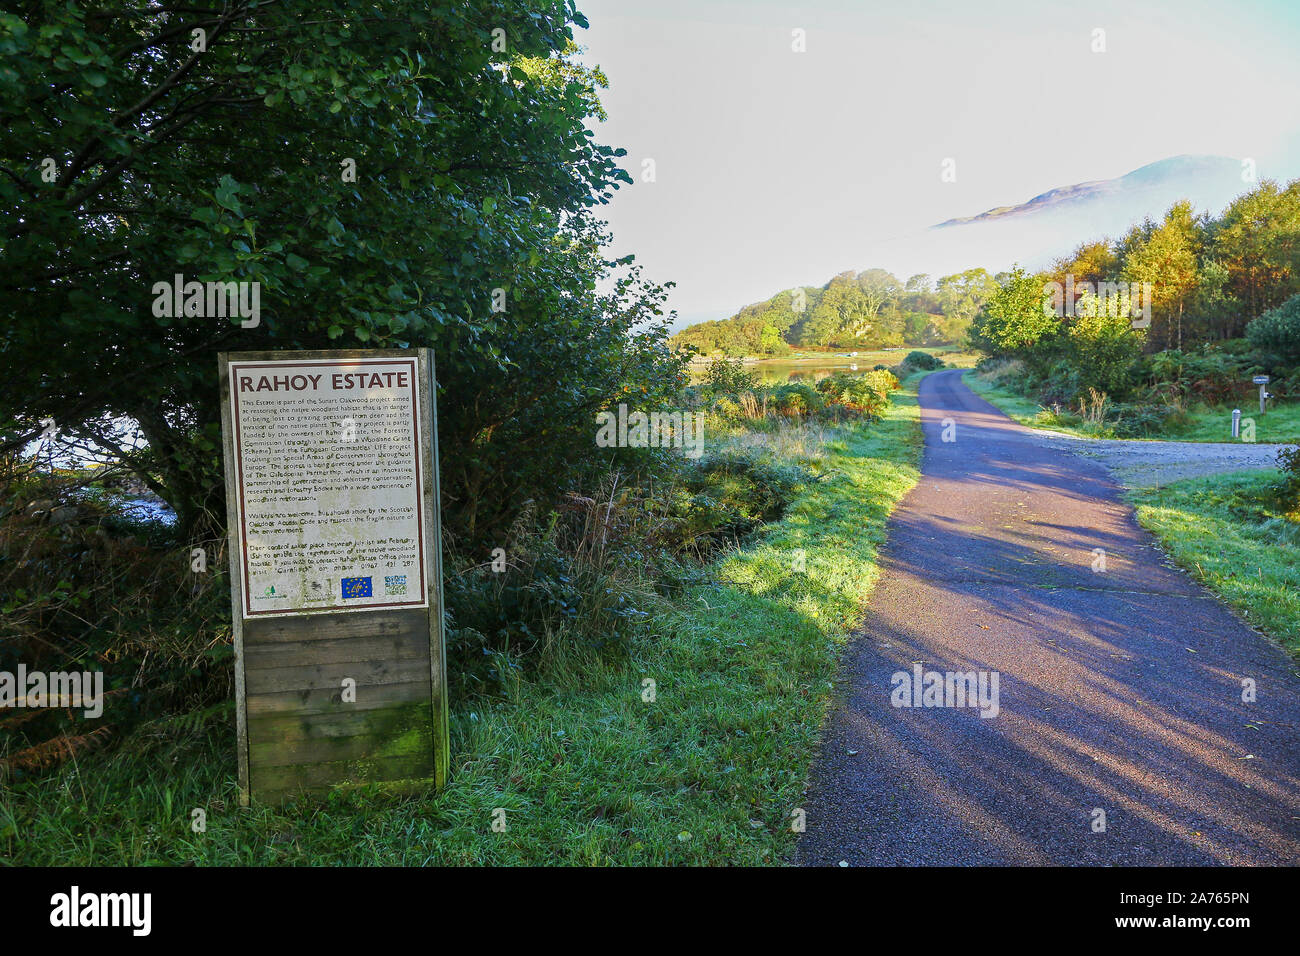 Un signe ou d'information sur la carte Rahoy estate sur les rives du Loch Teacuis, Morvern, Highlands, Scotland Banque D'Images